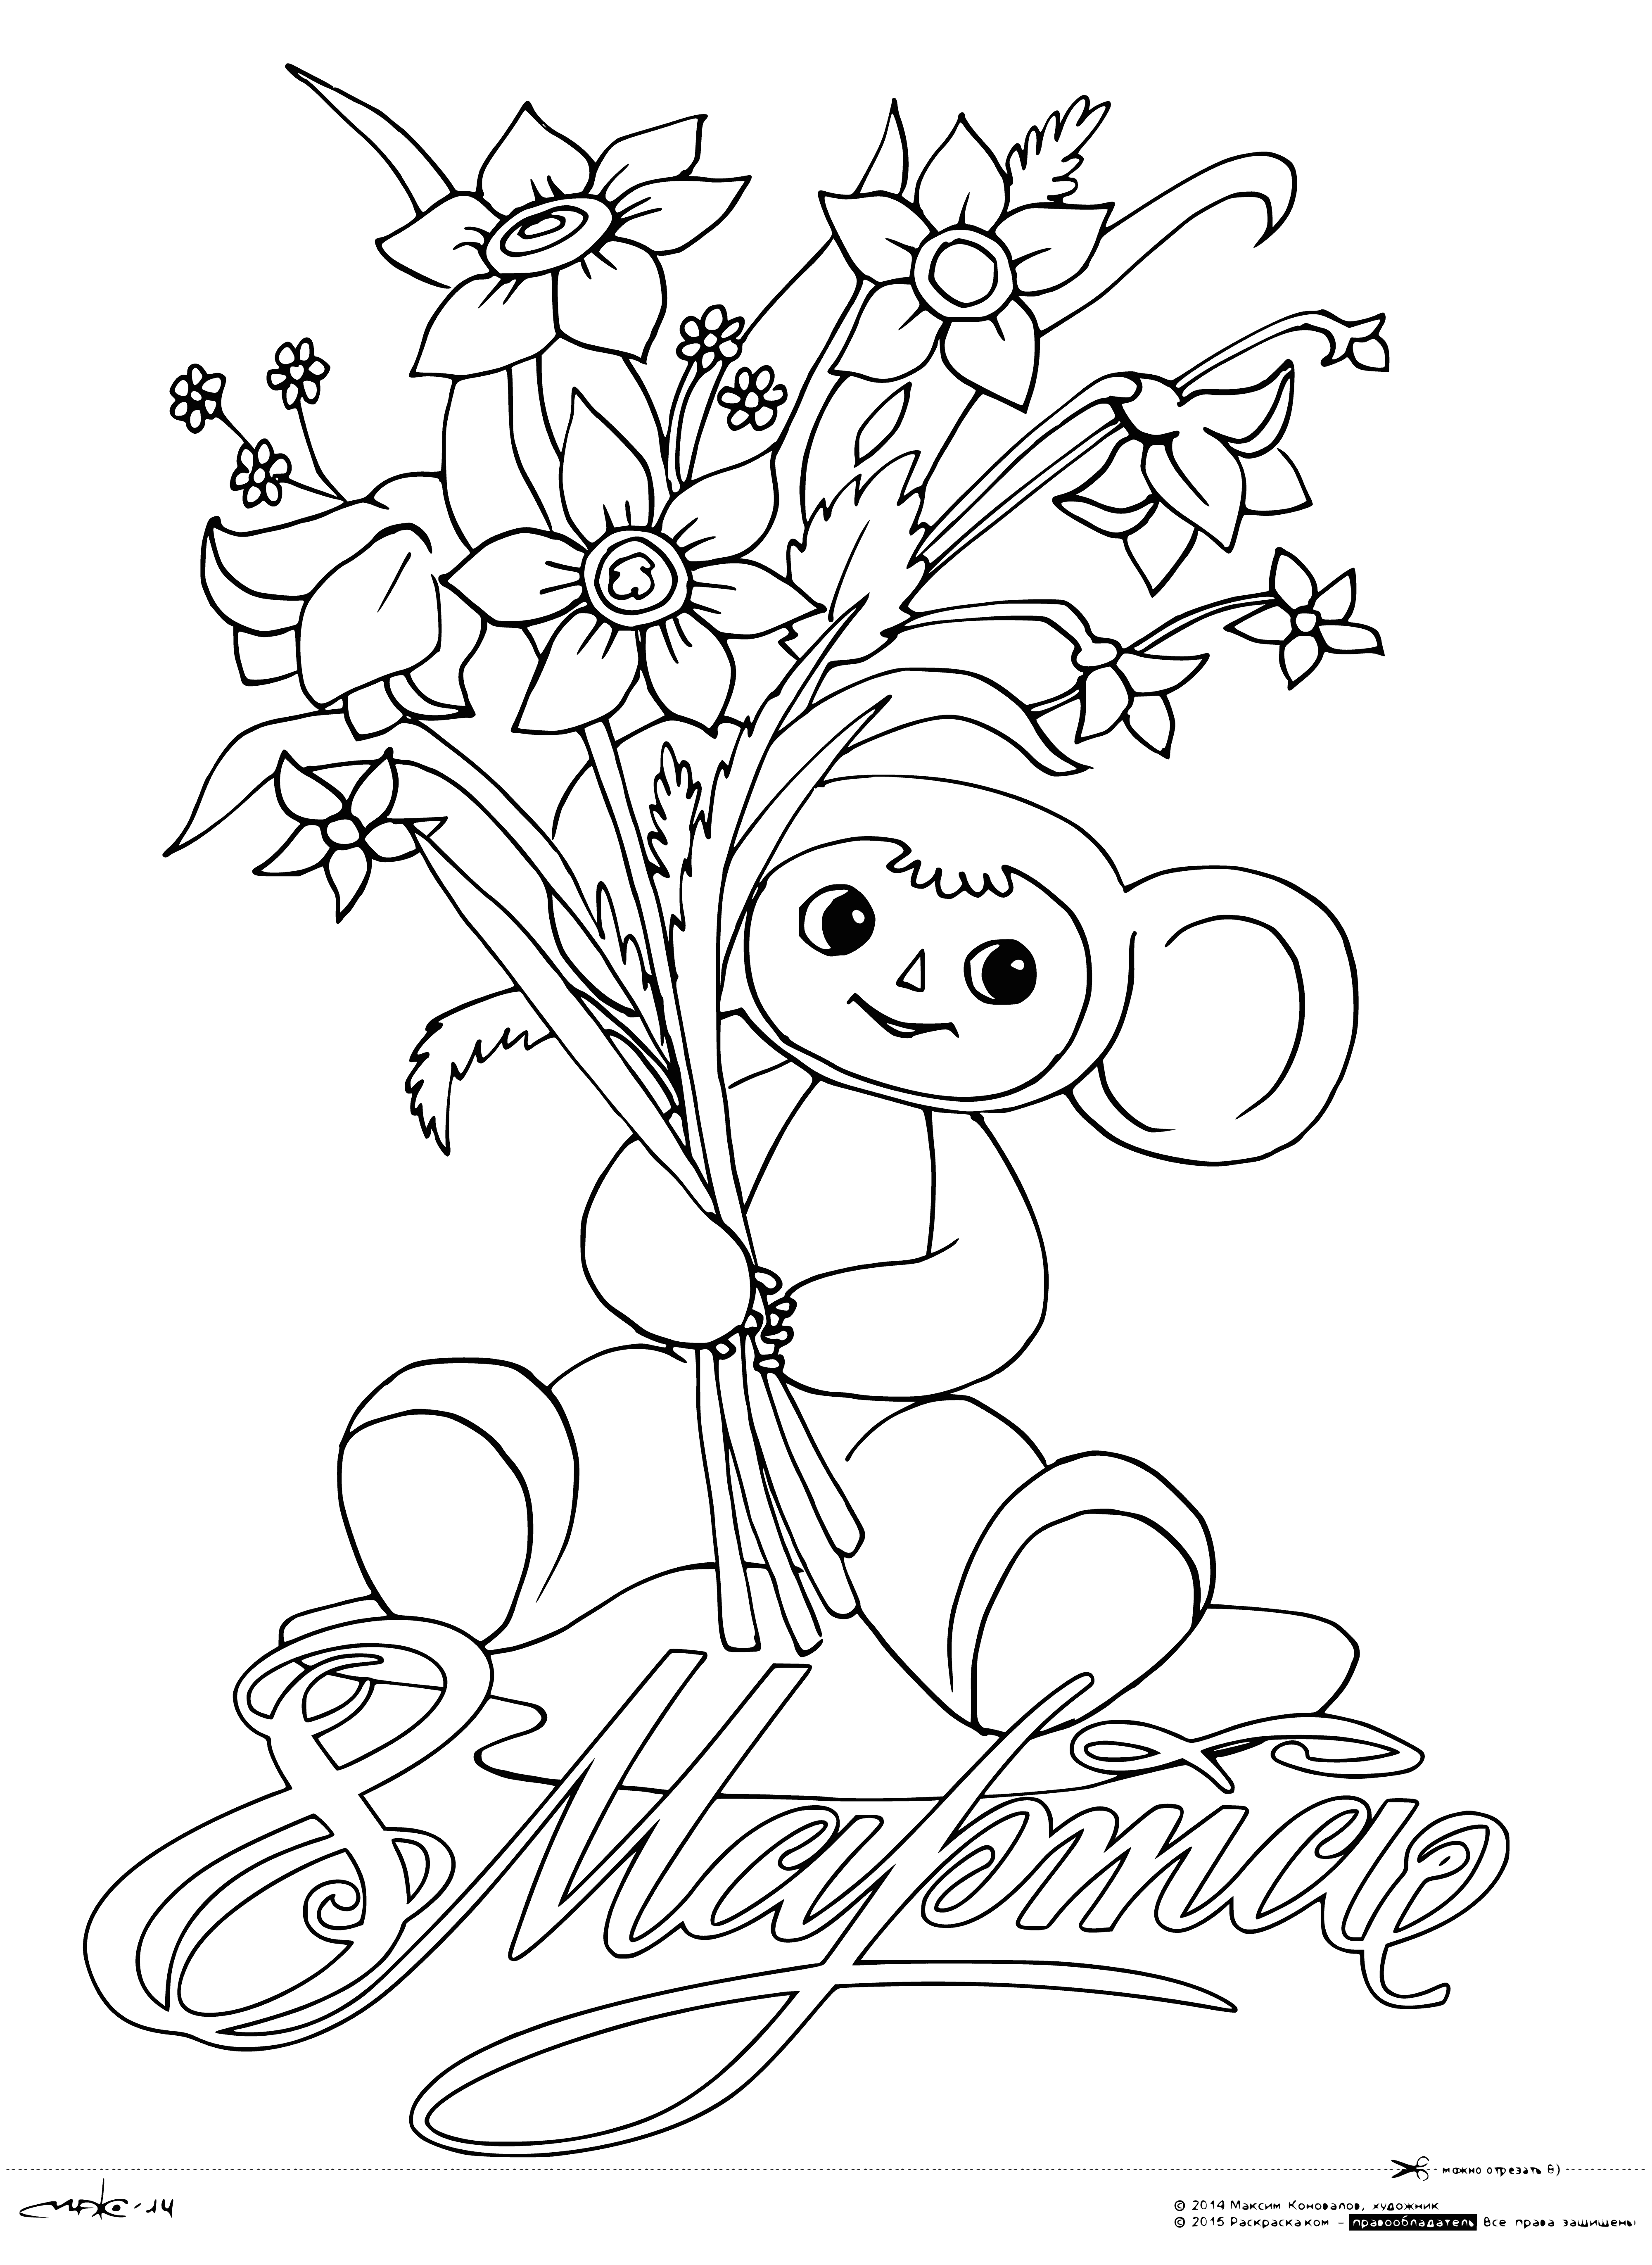 Cheburashka bir buket verir boyama sayfası